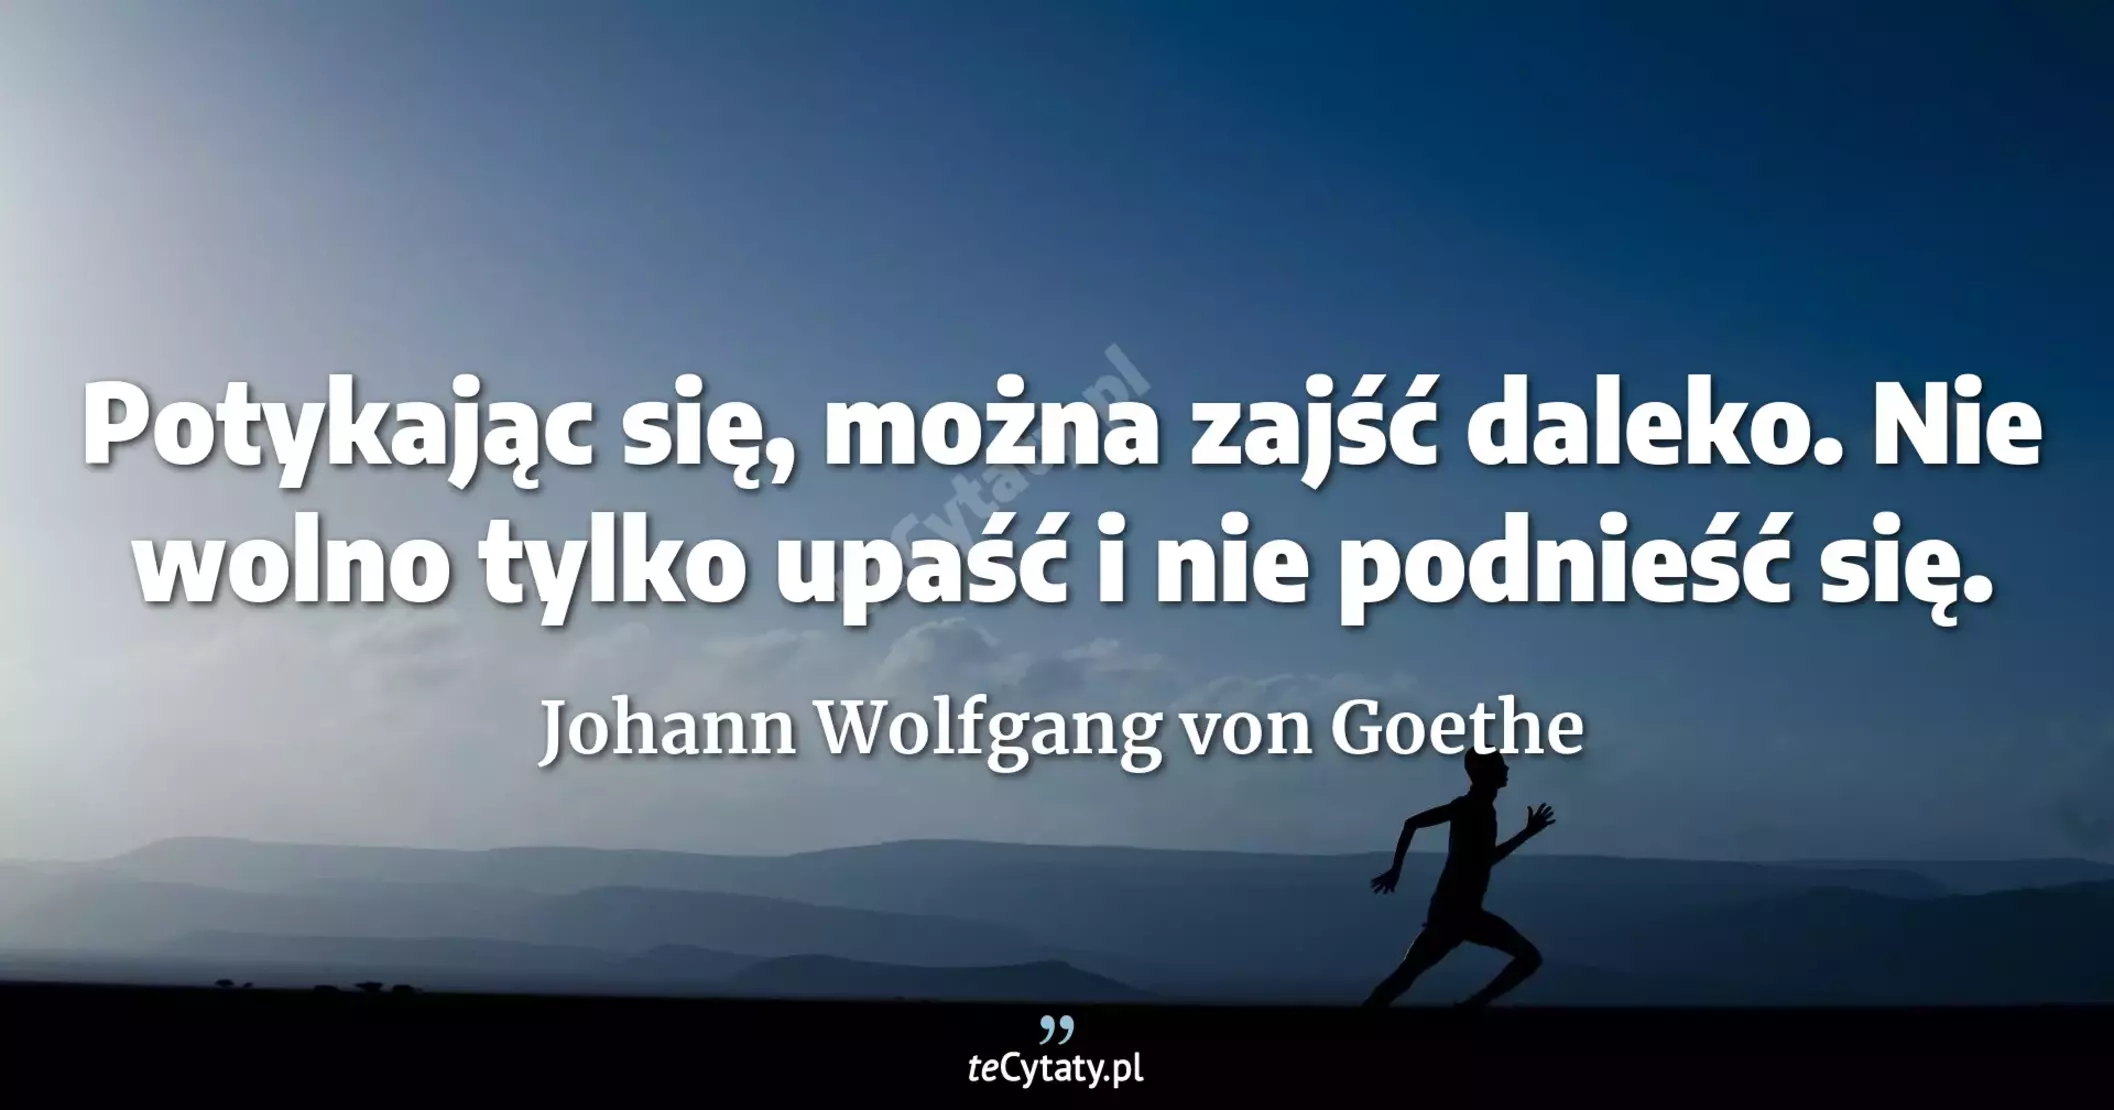 Potykając się, można zajść daleko. Nie wolno tylko upaść i nie podnieść się. - Johann Wolfgang von Goethe